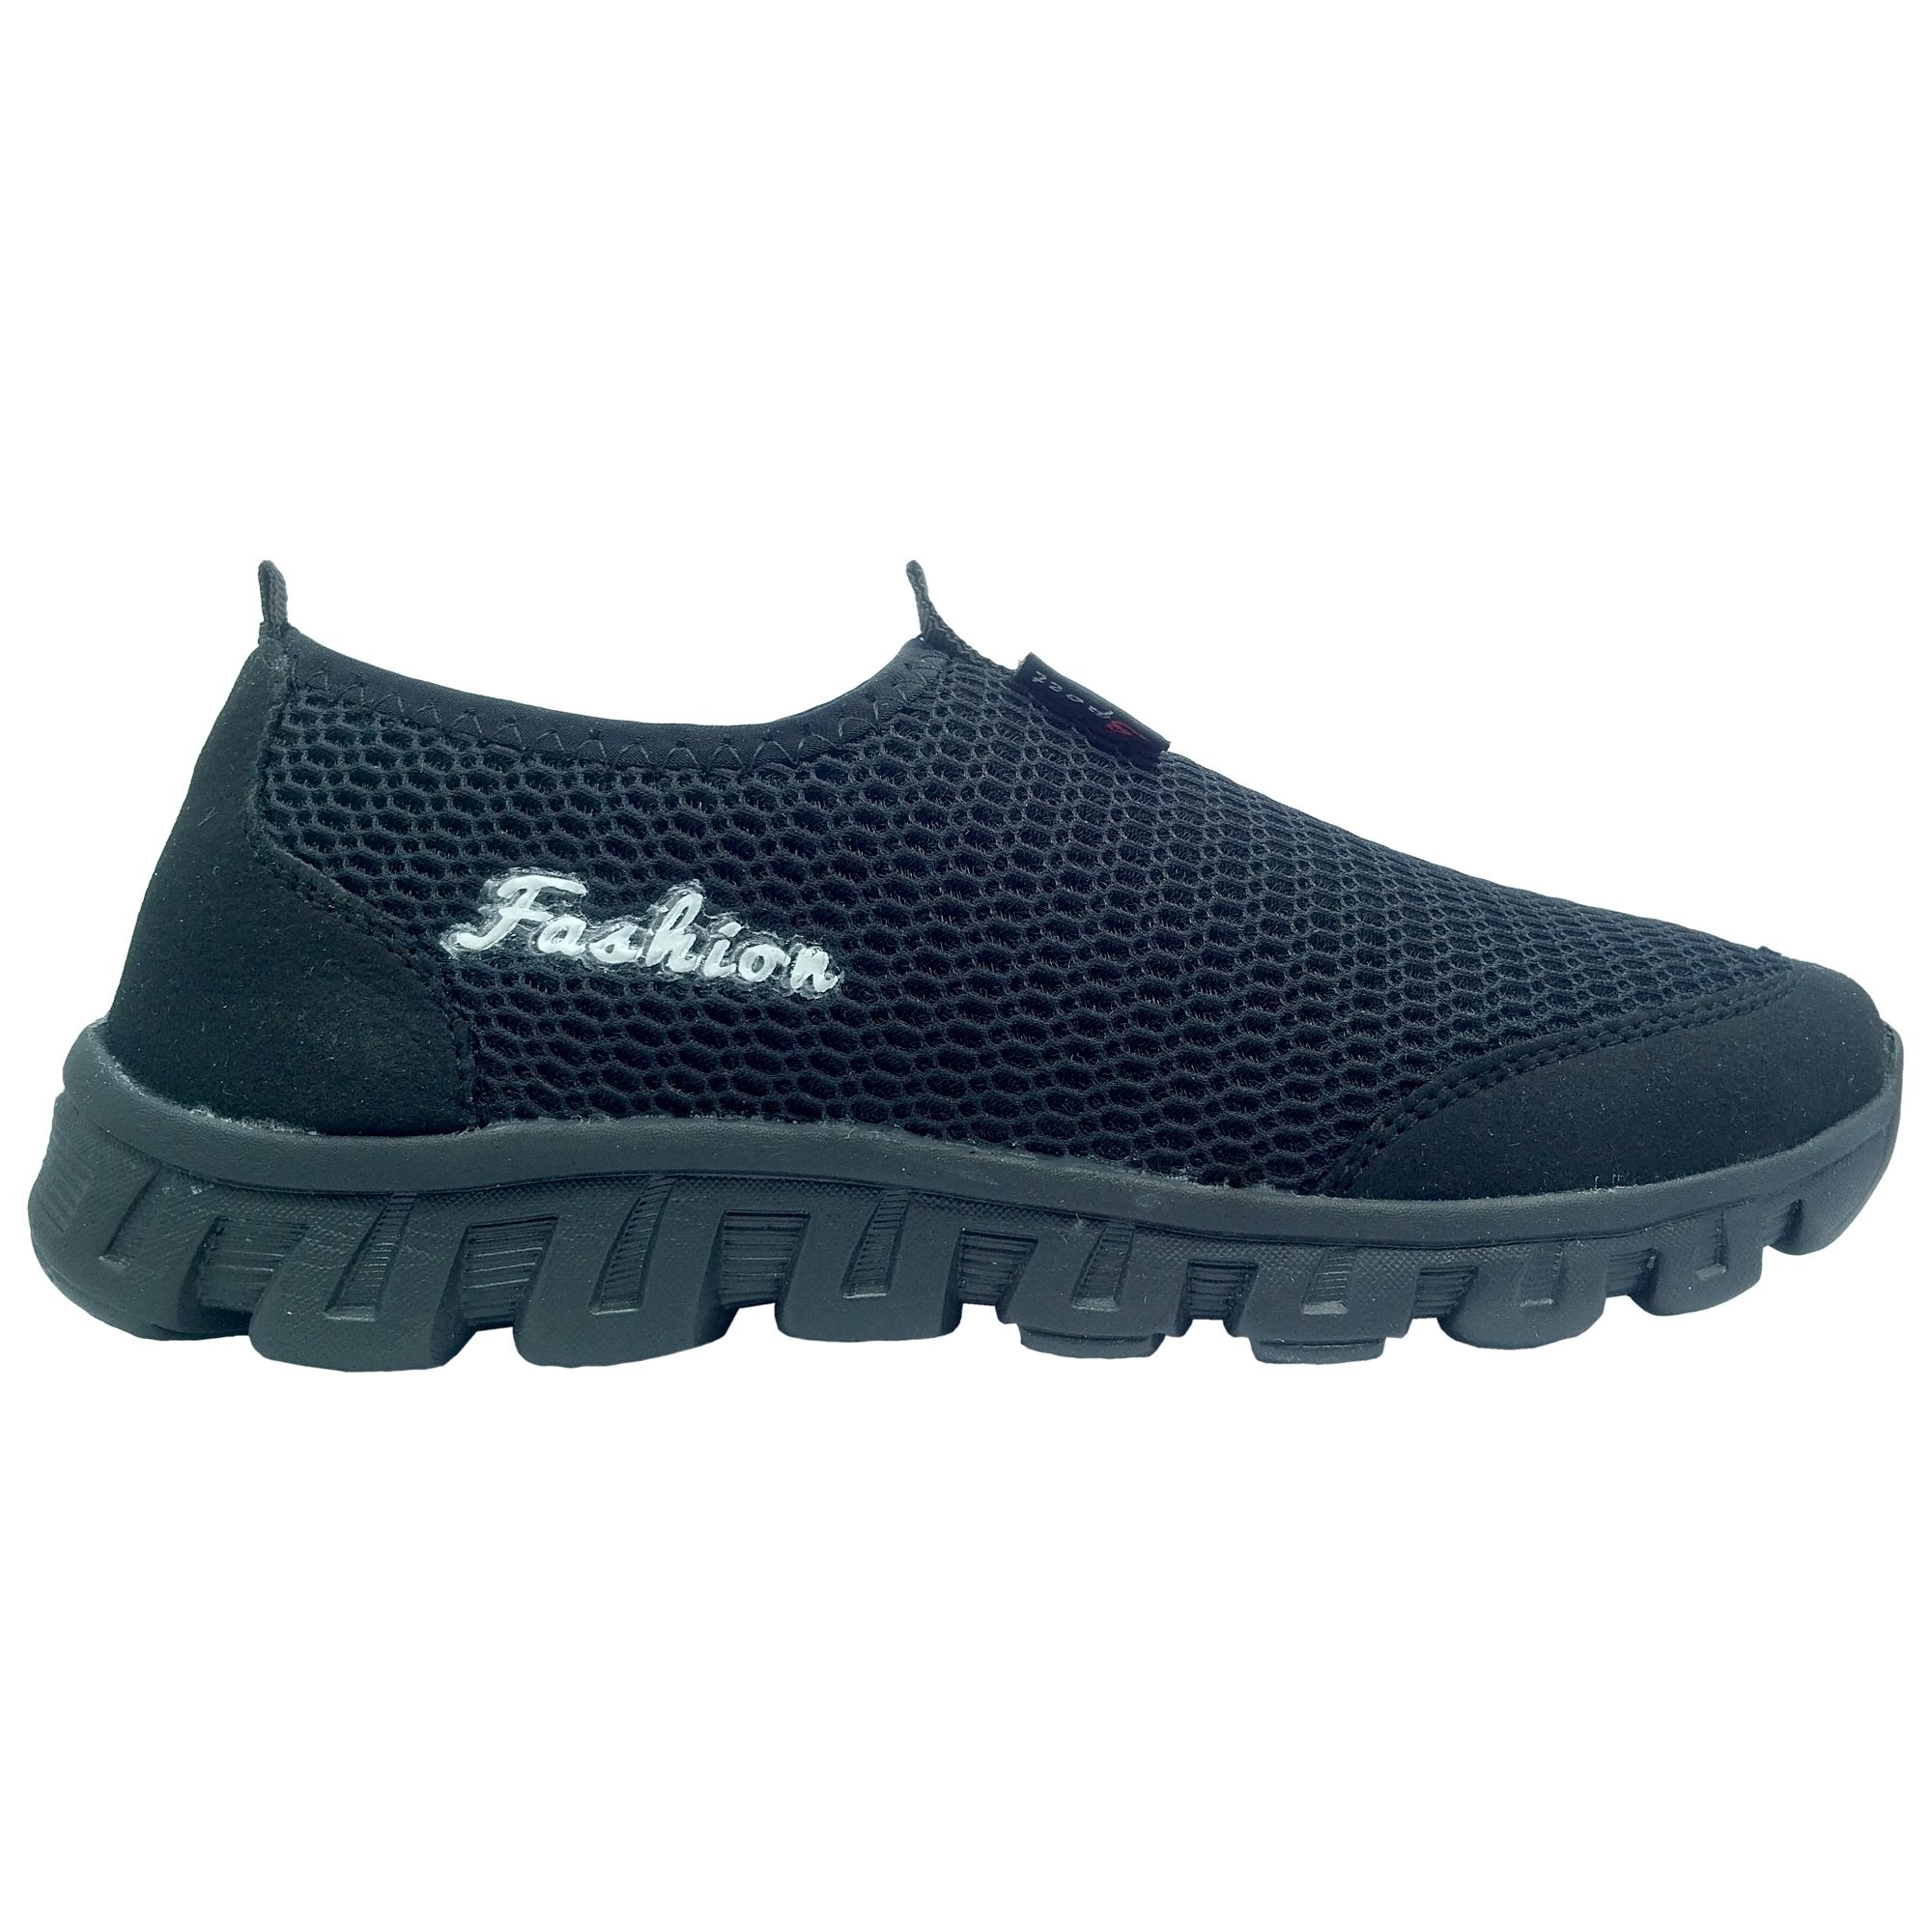 کفش مخصوص پیاده روی مردانه فشن مدل Sport 03 رنگ مشکی